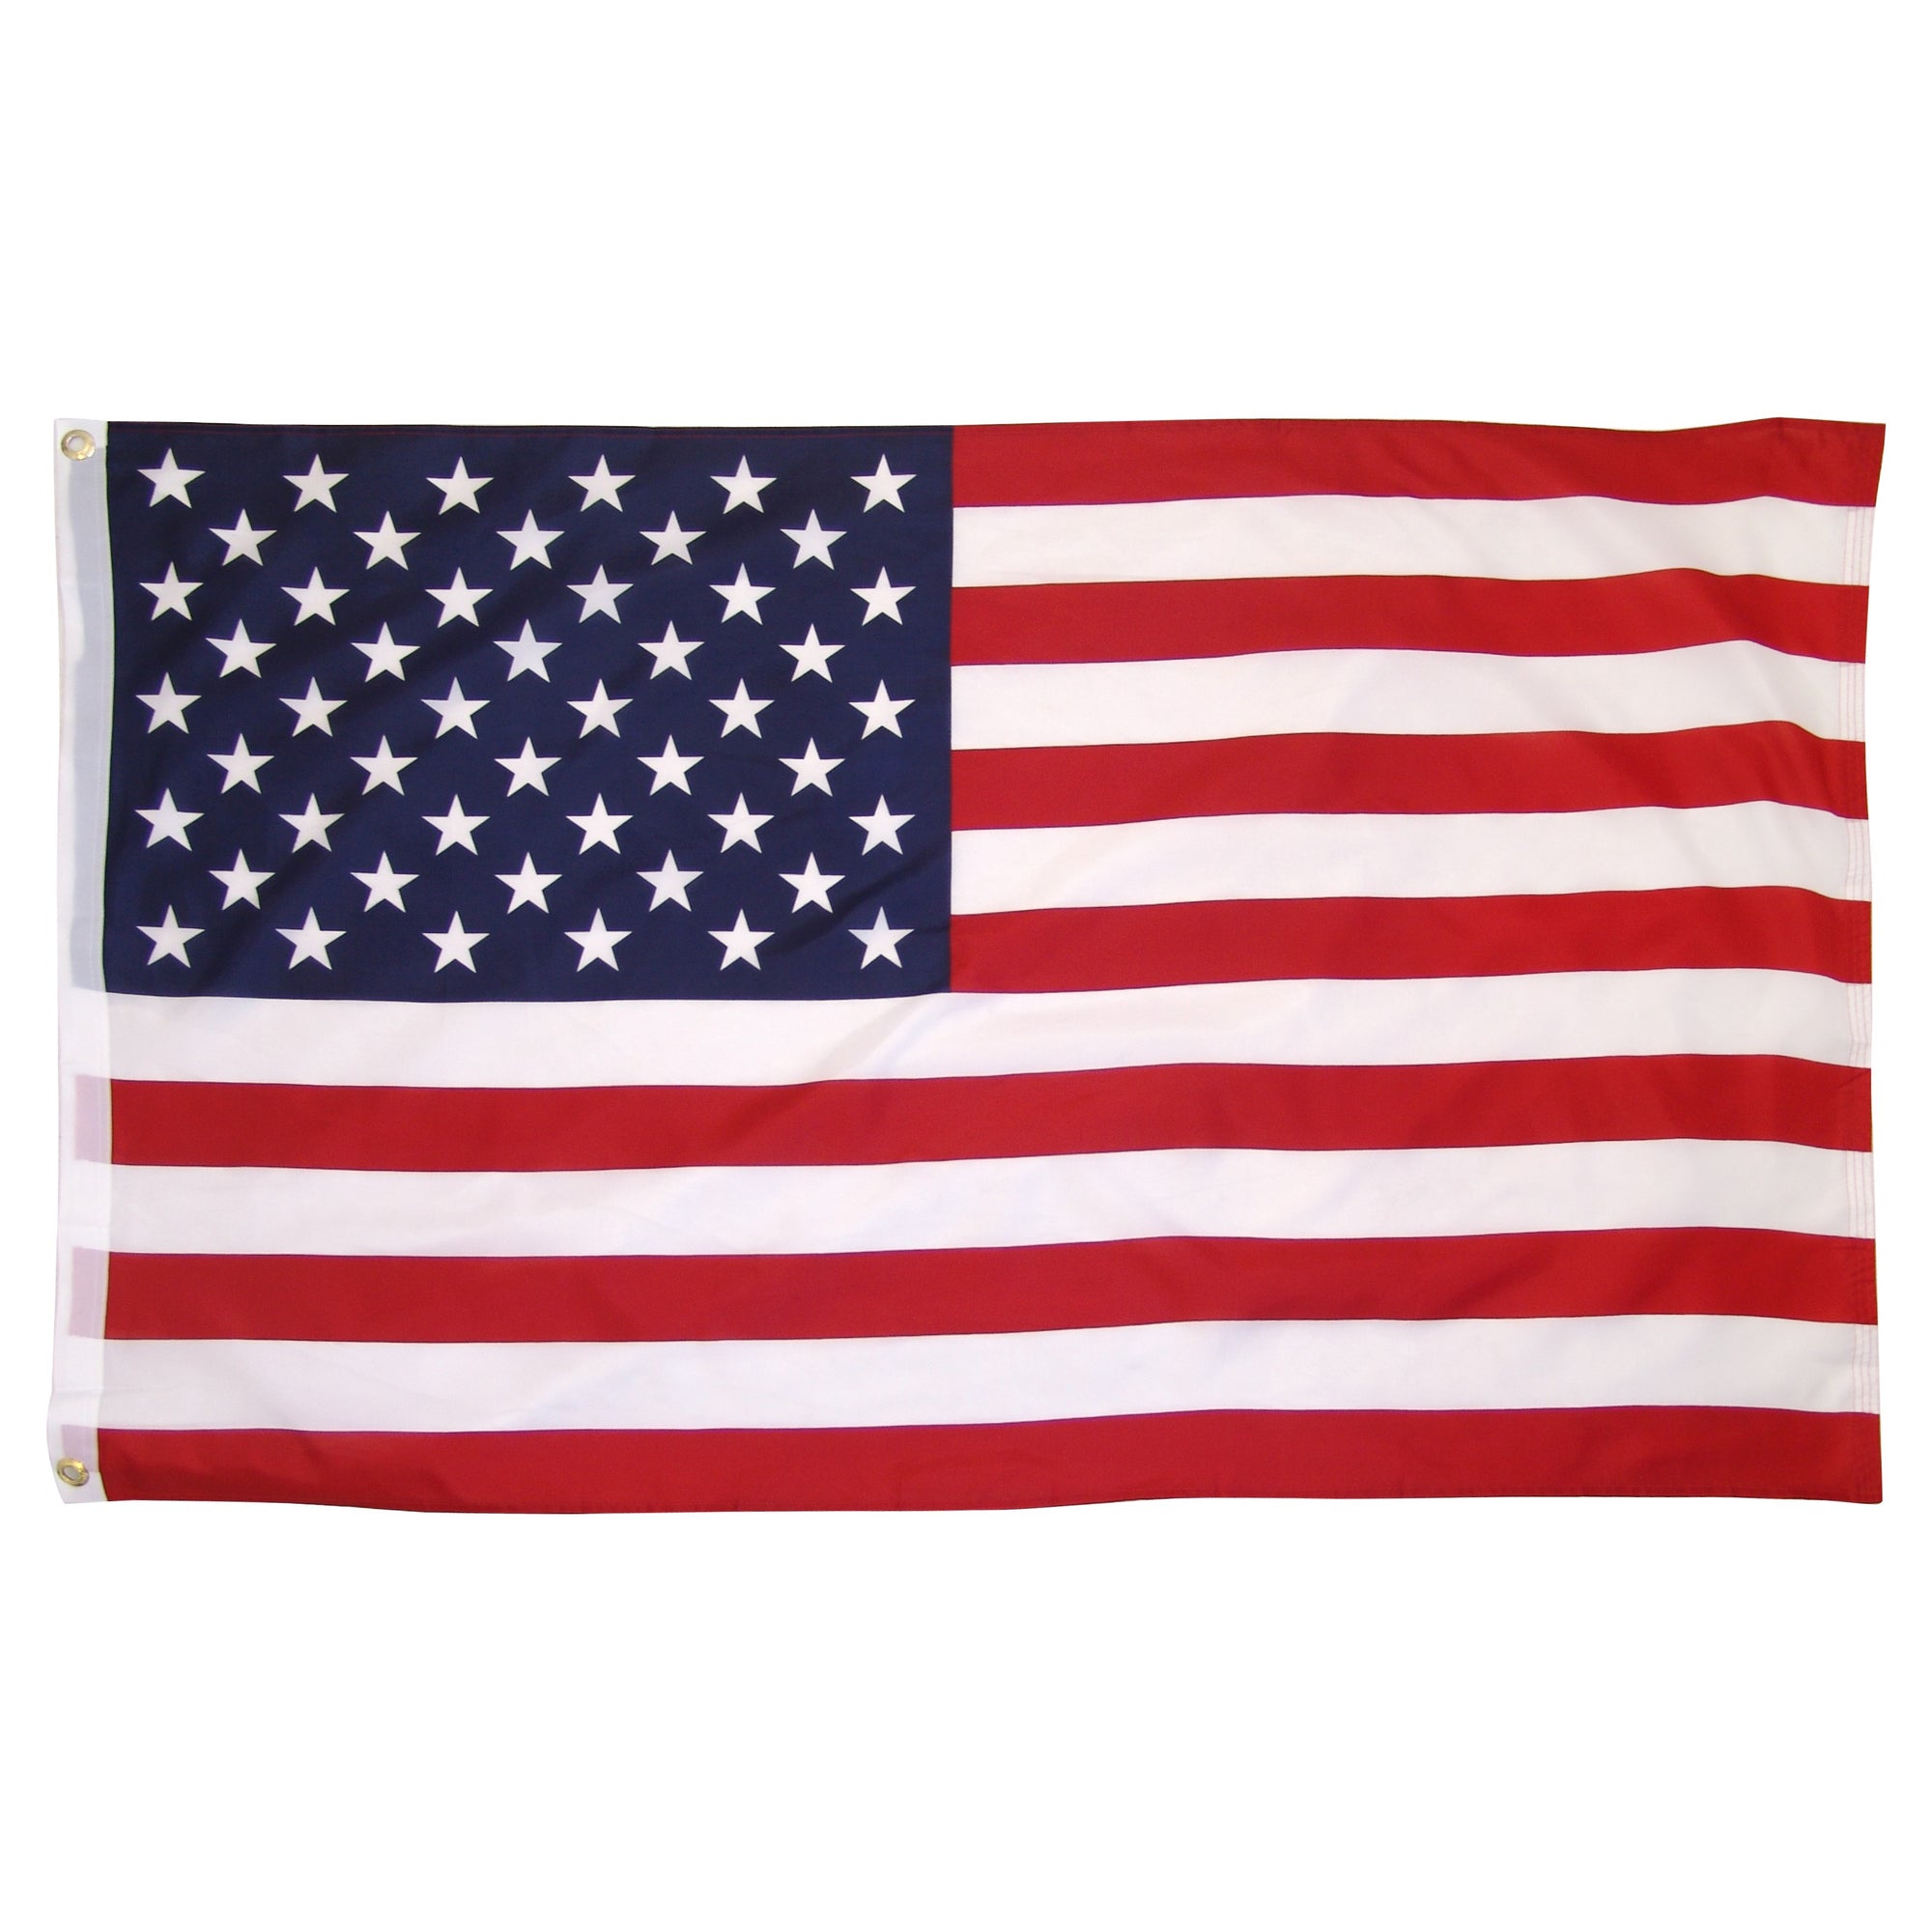 US Eder flag for sale